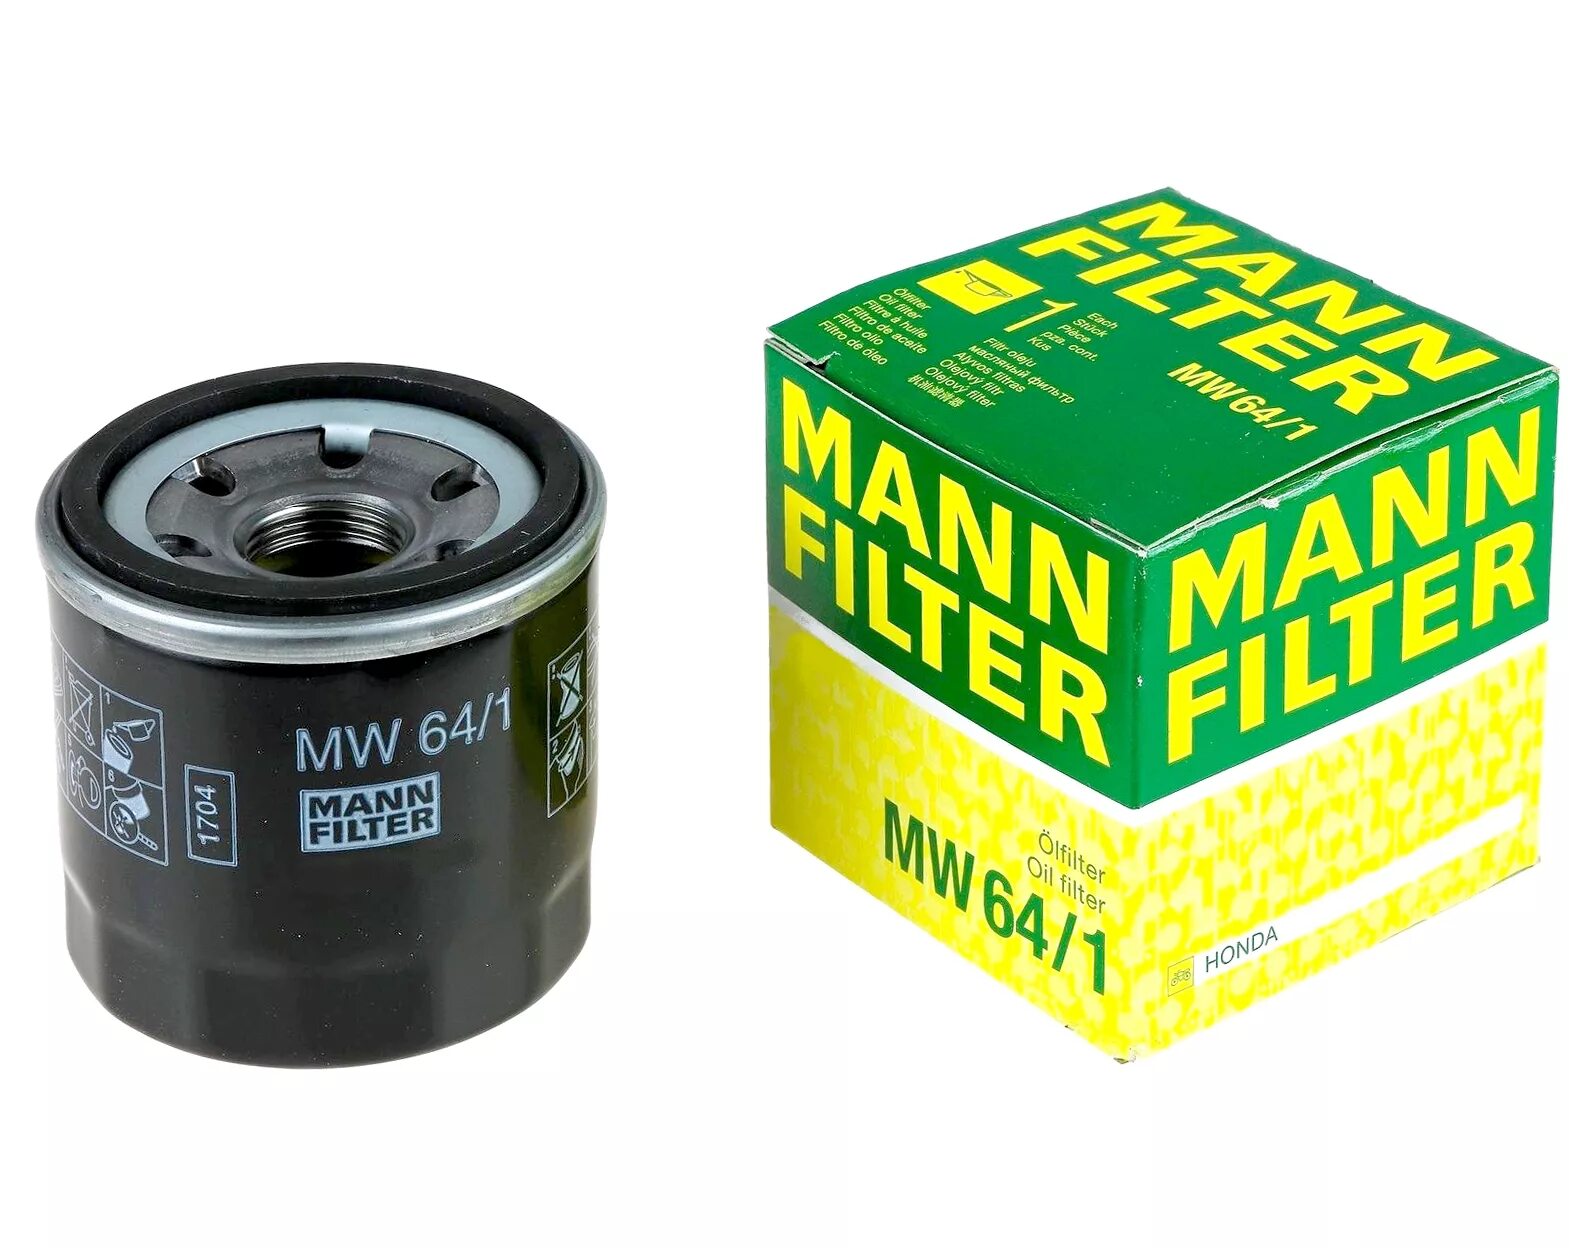 Фильтр масляный Mann mw64. Масляный фильтр Mannol mw64. Mann-Filter MW 64/1 фильтр масляный для мотоциклов. Фильтр Манн 64/1 на Хонда. Масло фильтр отзывы